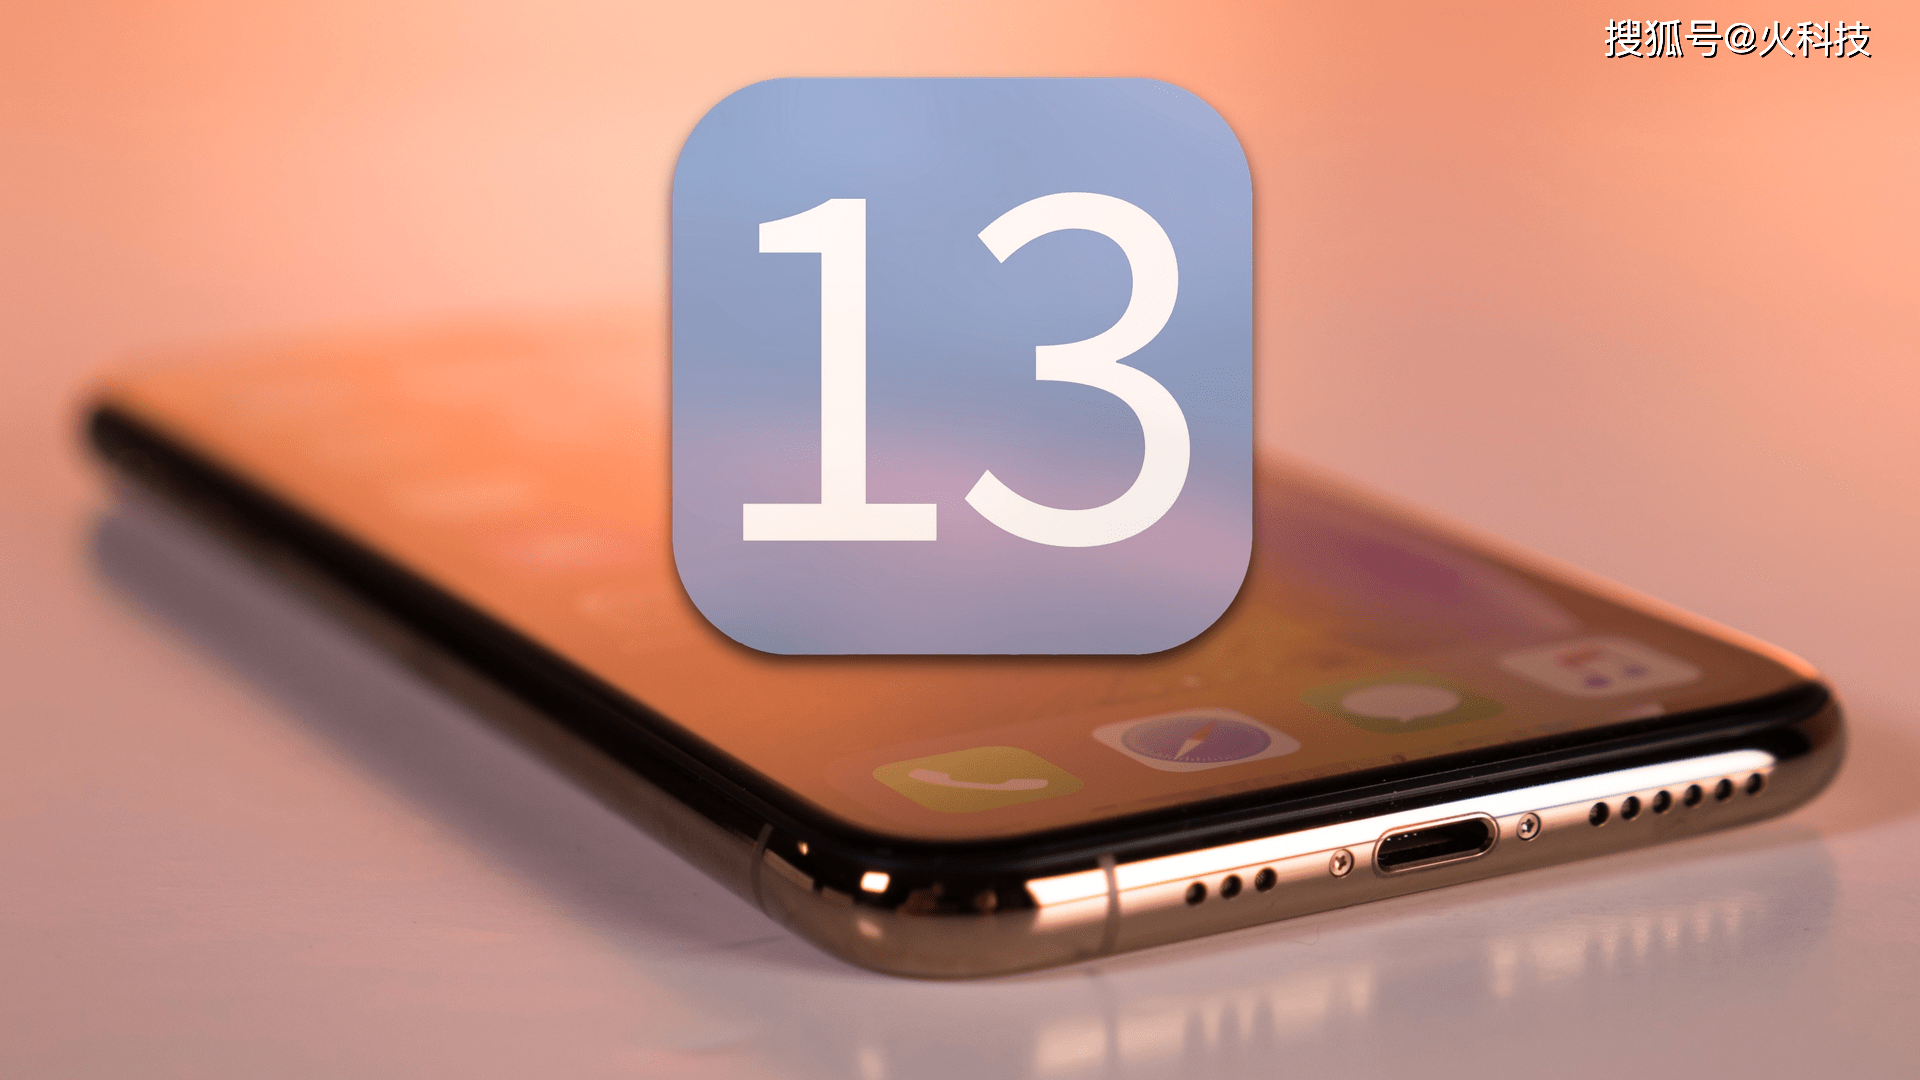 iPhone 13真全面屏旗舰手机，2021年值得等和期待的苹果手机